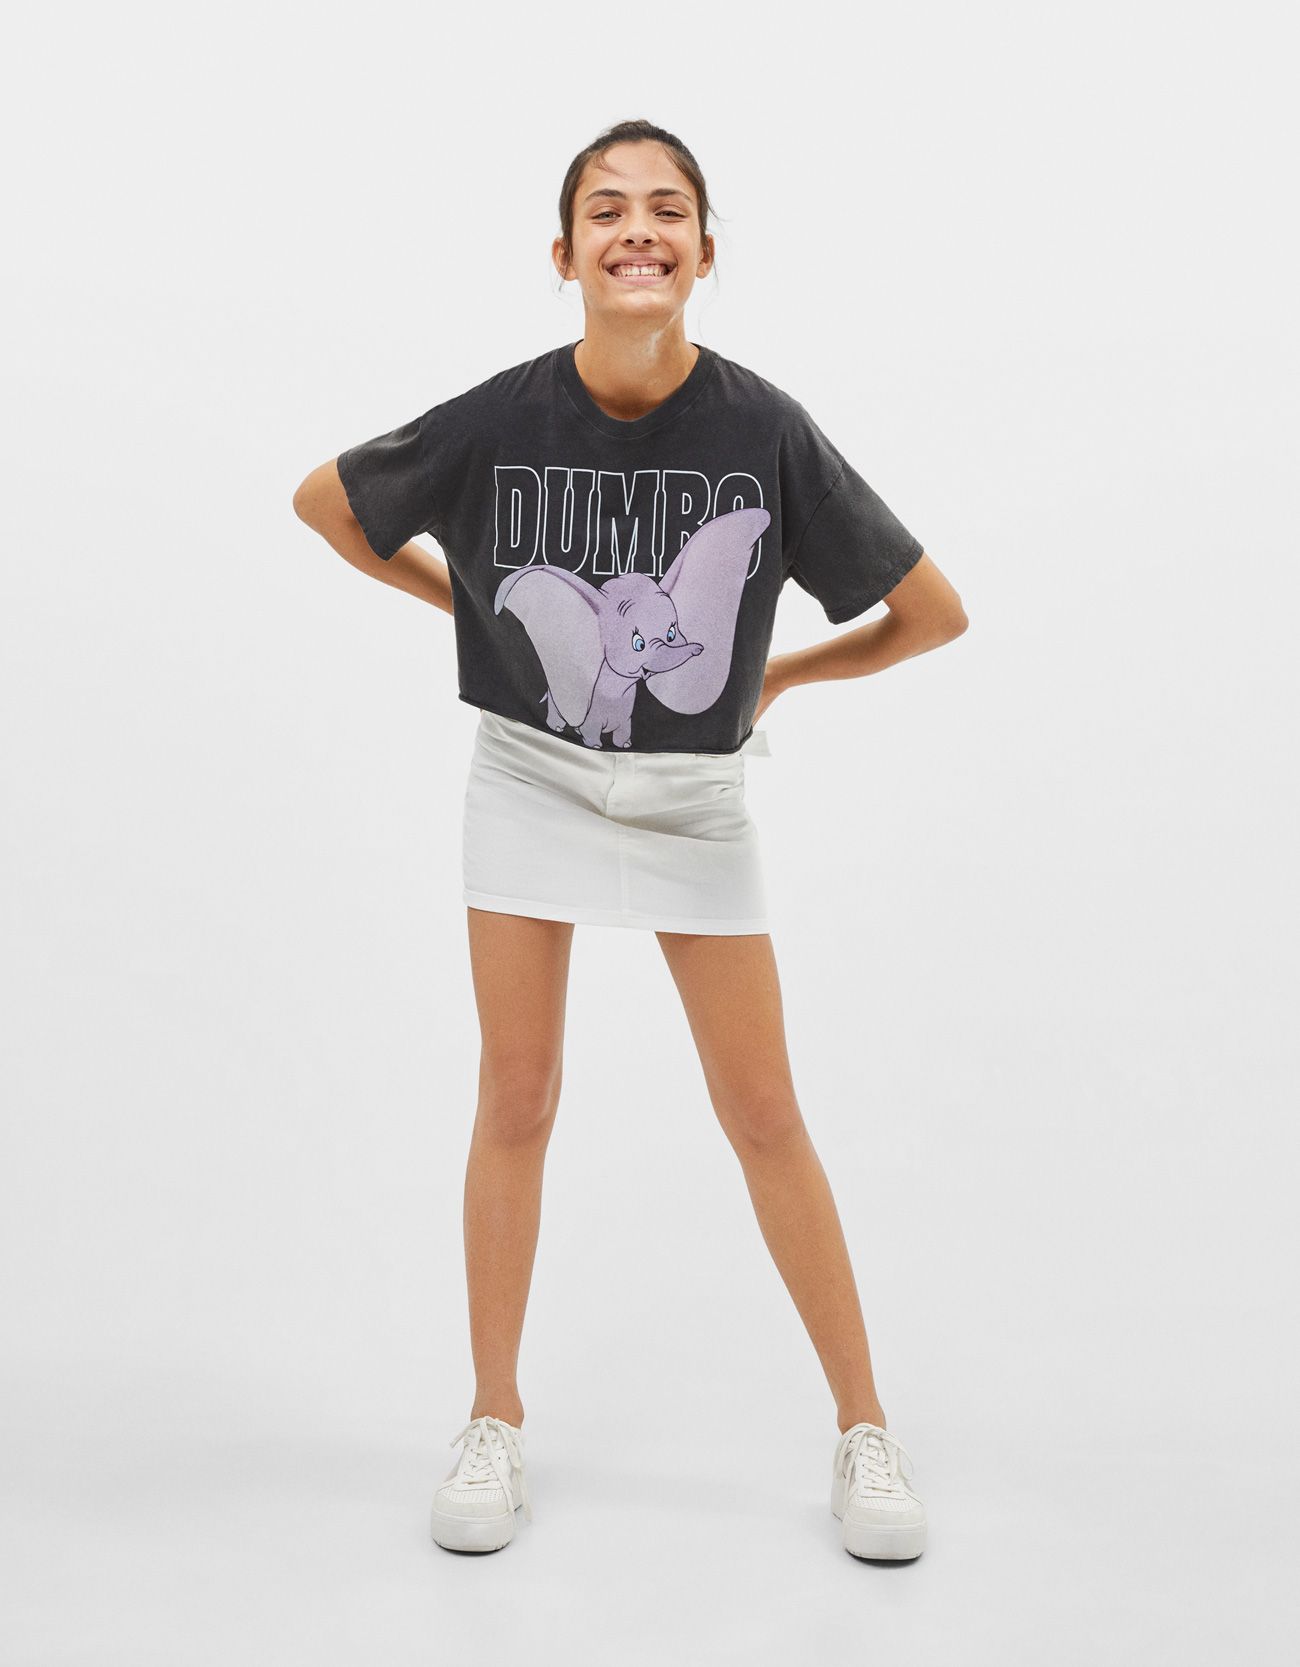 La camiseta 'cropped' de Dumbo que ha lanzado Bershka es todo lo que necesitas darle bienvenida buen tiempo